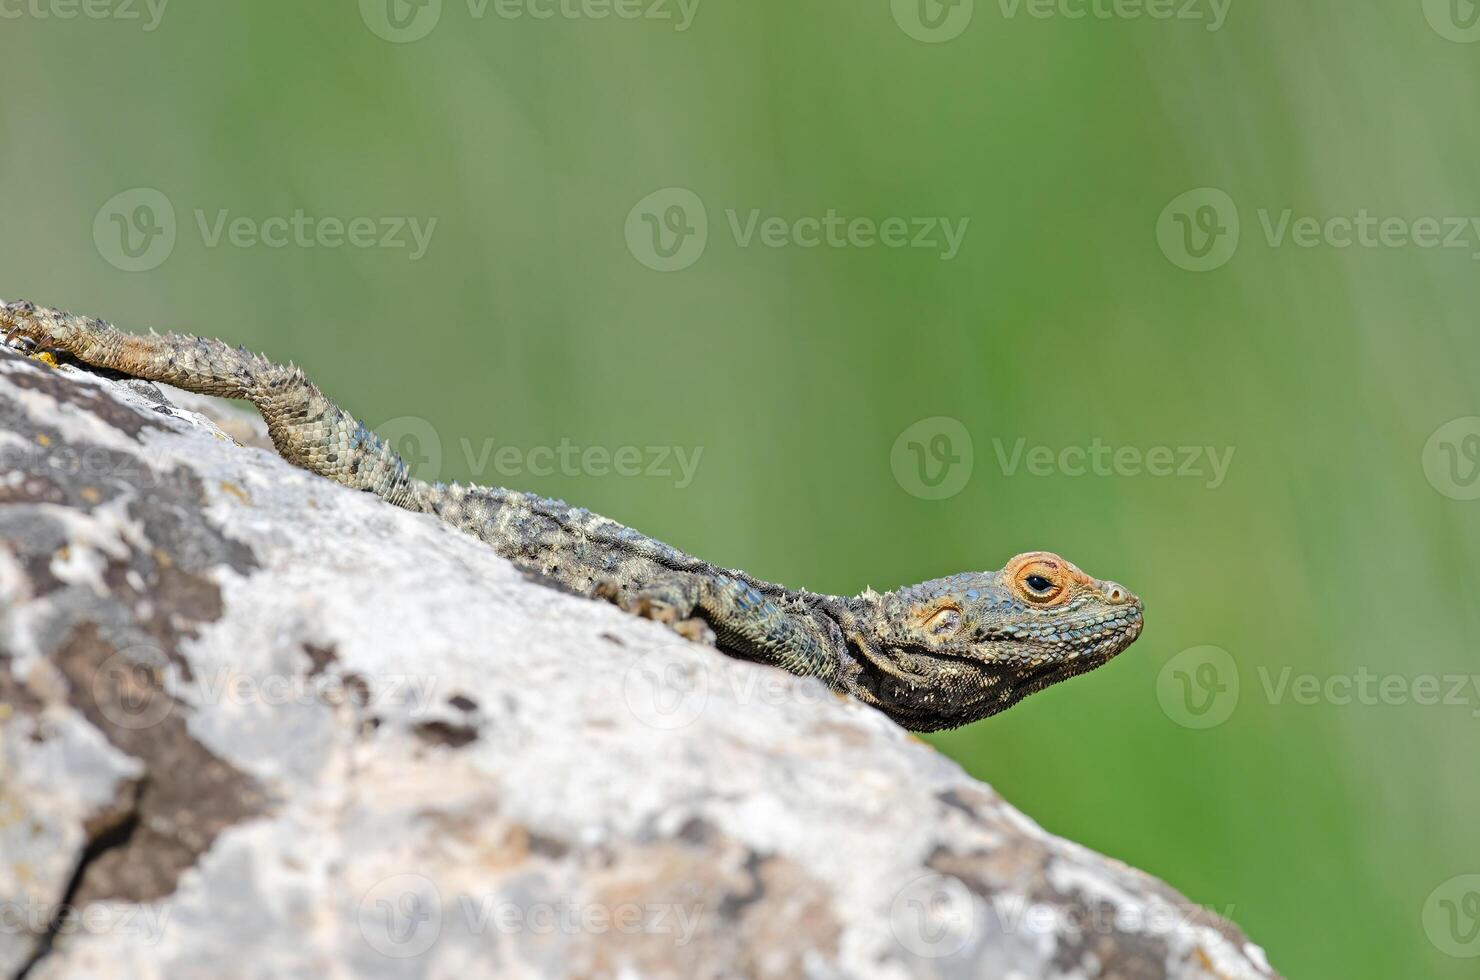 gris hardun lagarto, laudakia estelio broncearse en un rock en sus natural hábitat. foto